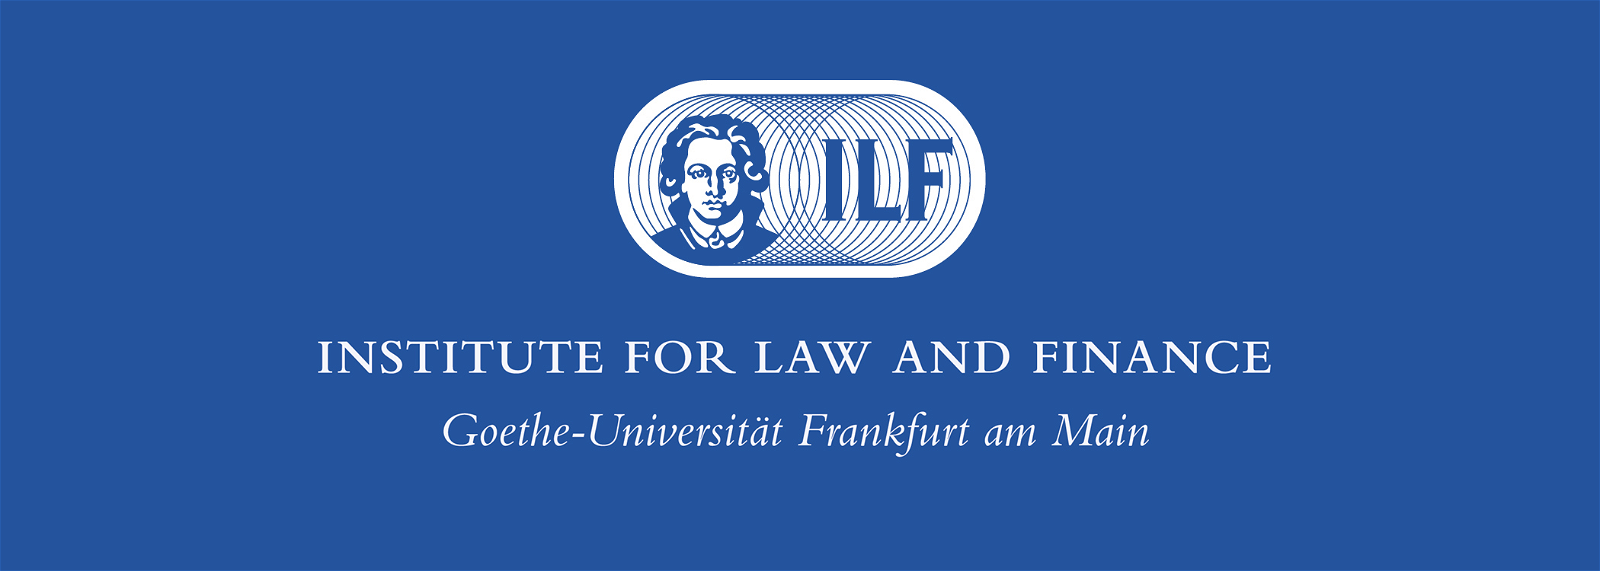 Studentische*r Mitarbeiter*in (m/w/d) am Institute for Law and Finance gesucht - Institute for Law and Finance der Goethe-Universität Frankfurt - Logo